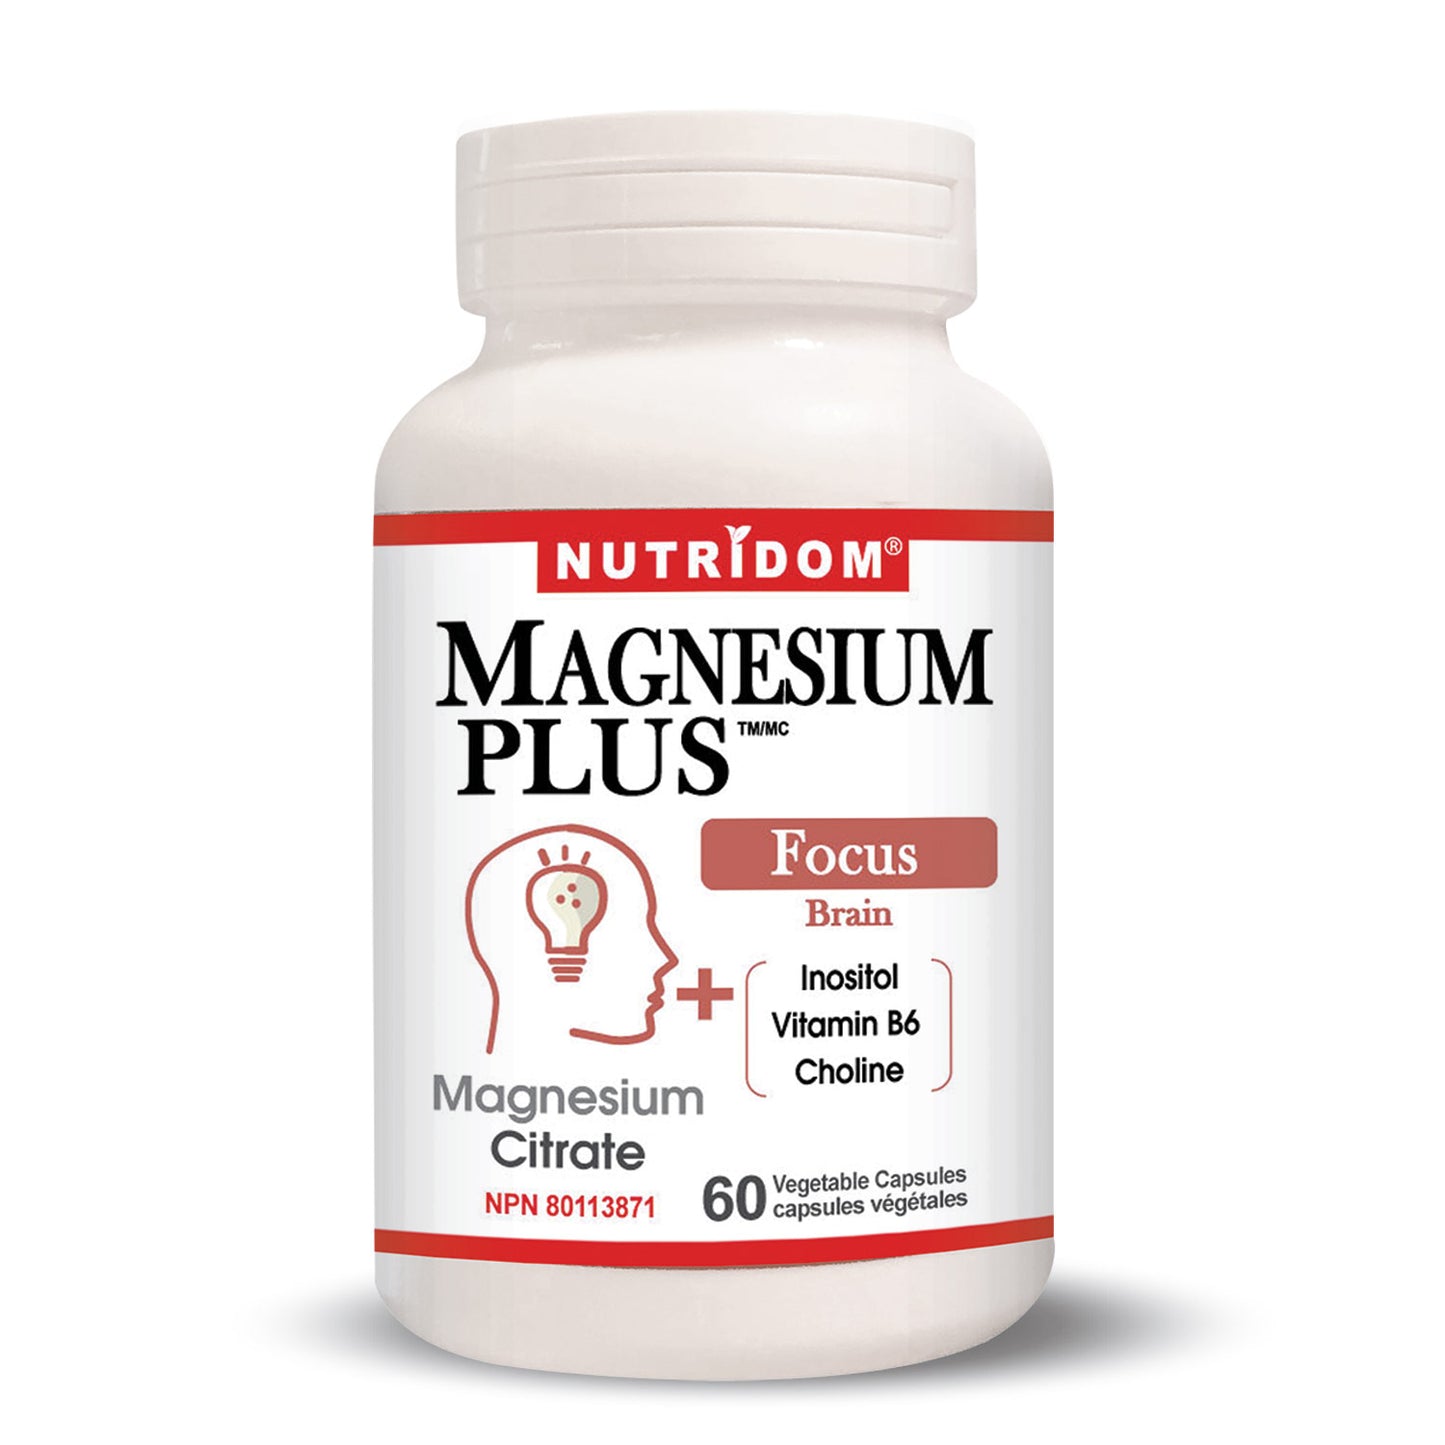 Nutridom Magnesium Plus Focus (60 Veggie Capsules)